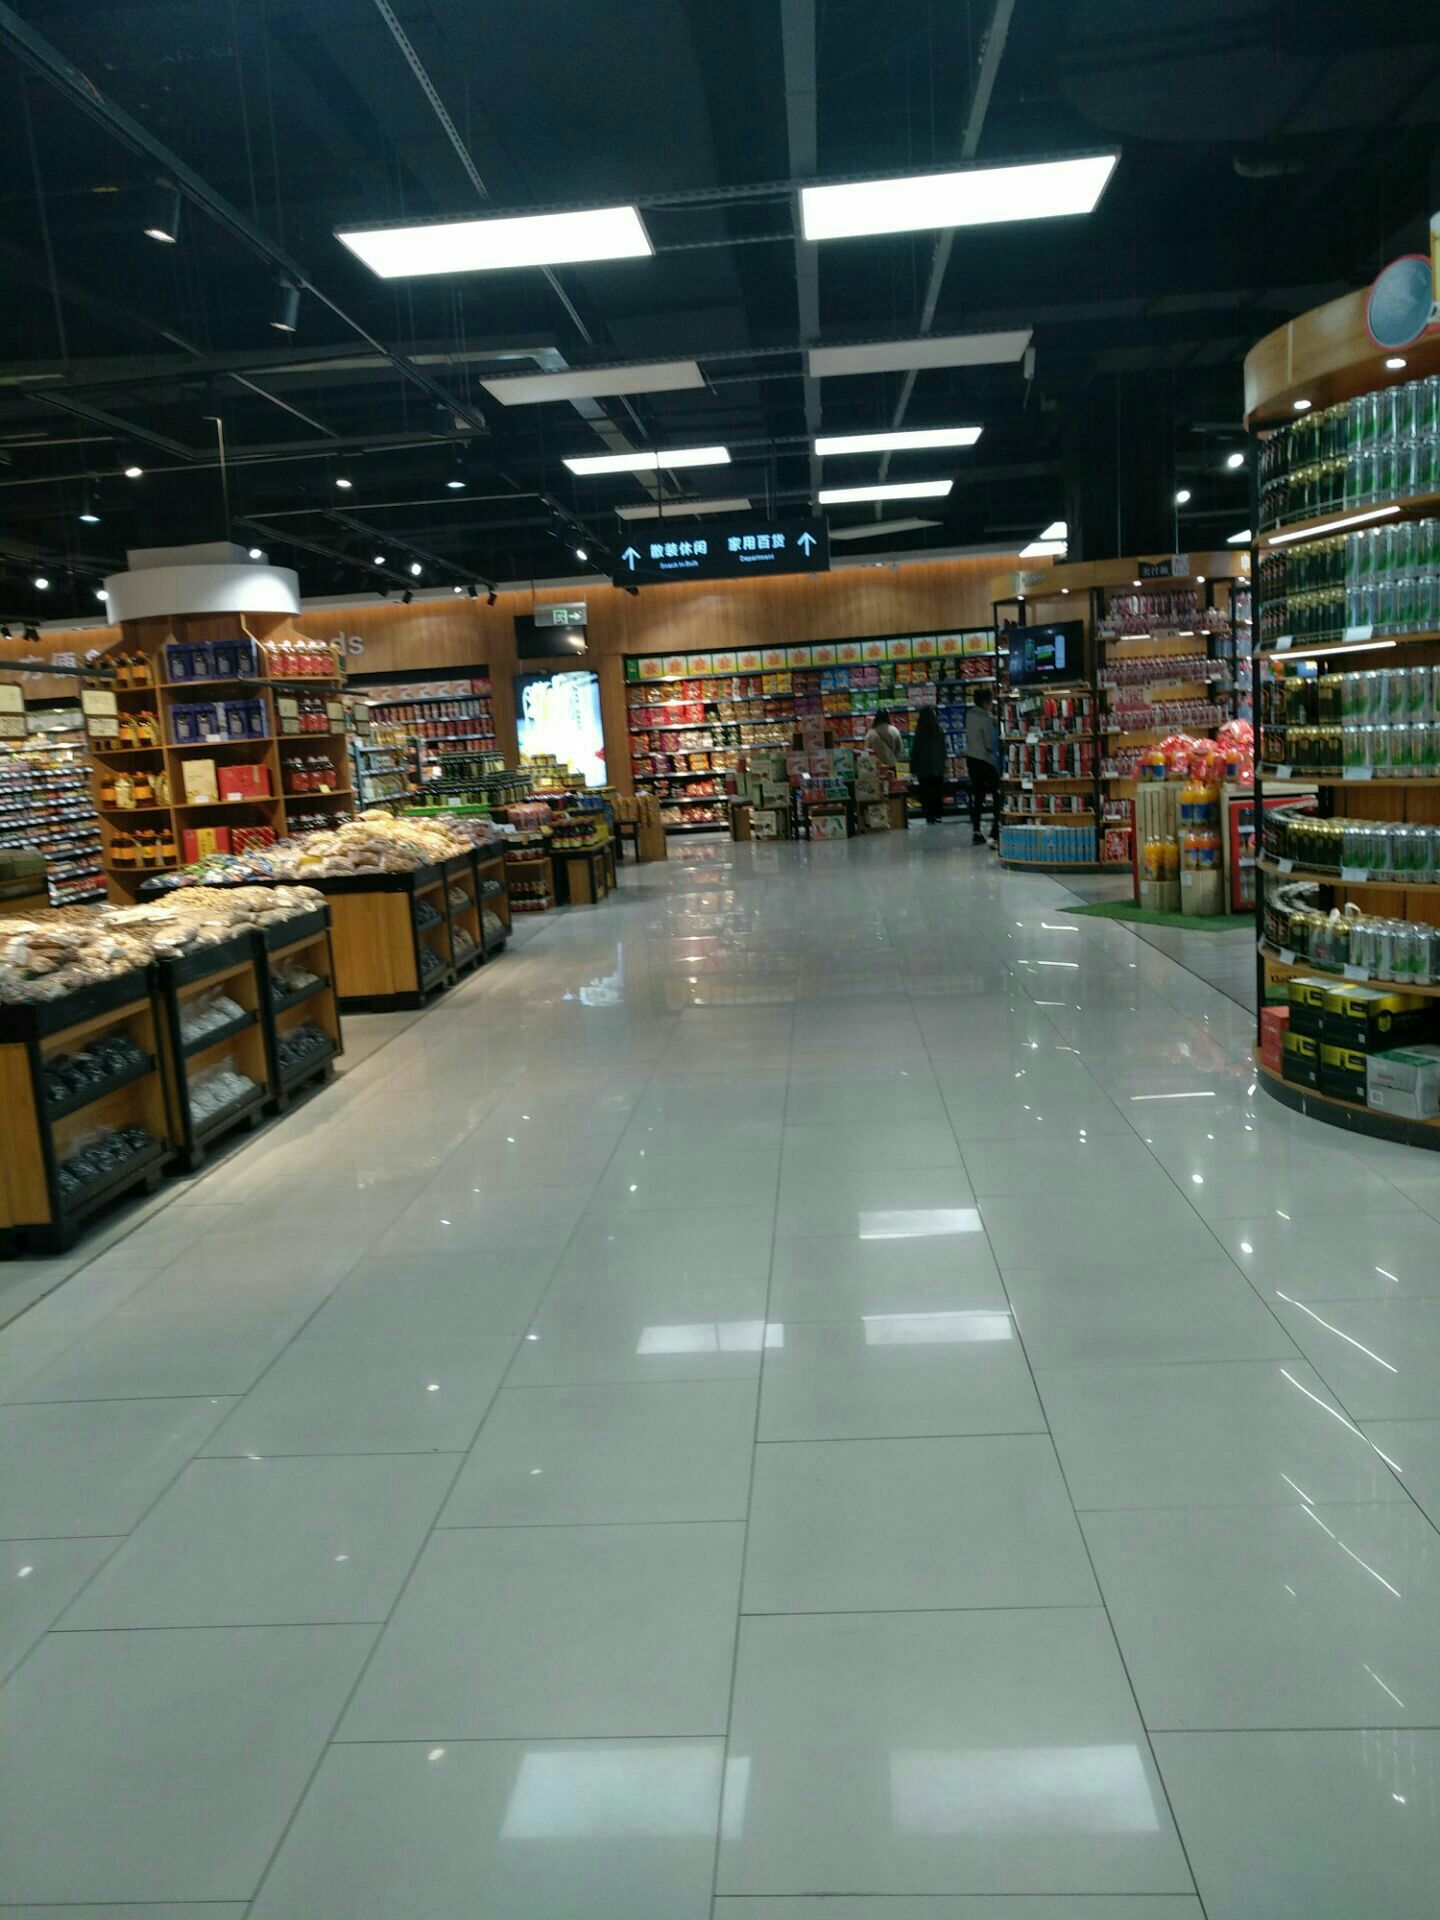 唐山振华超市图片